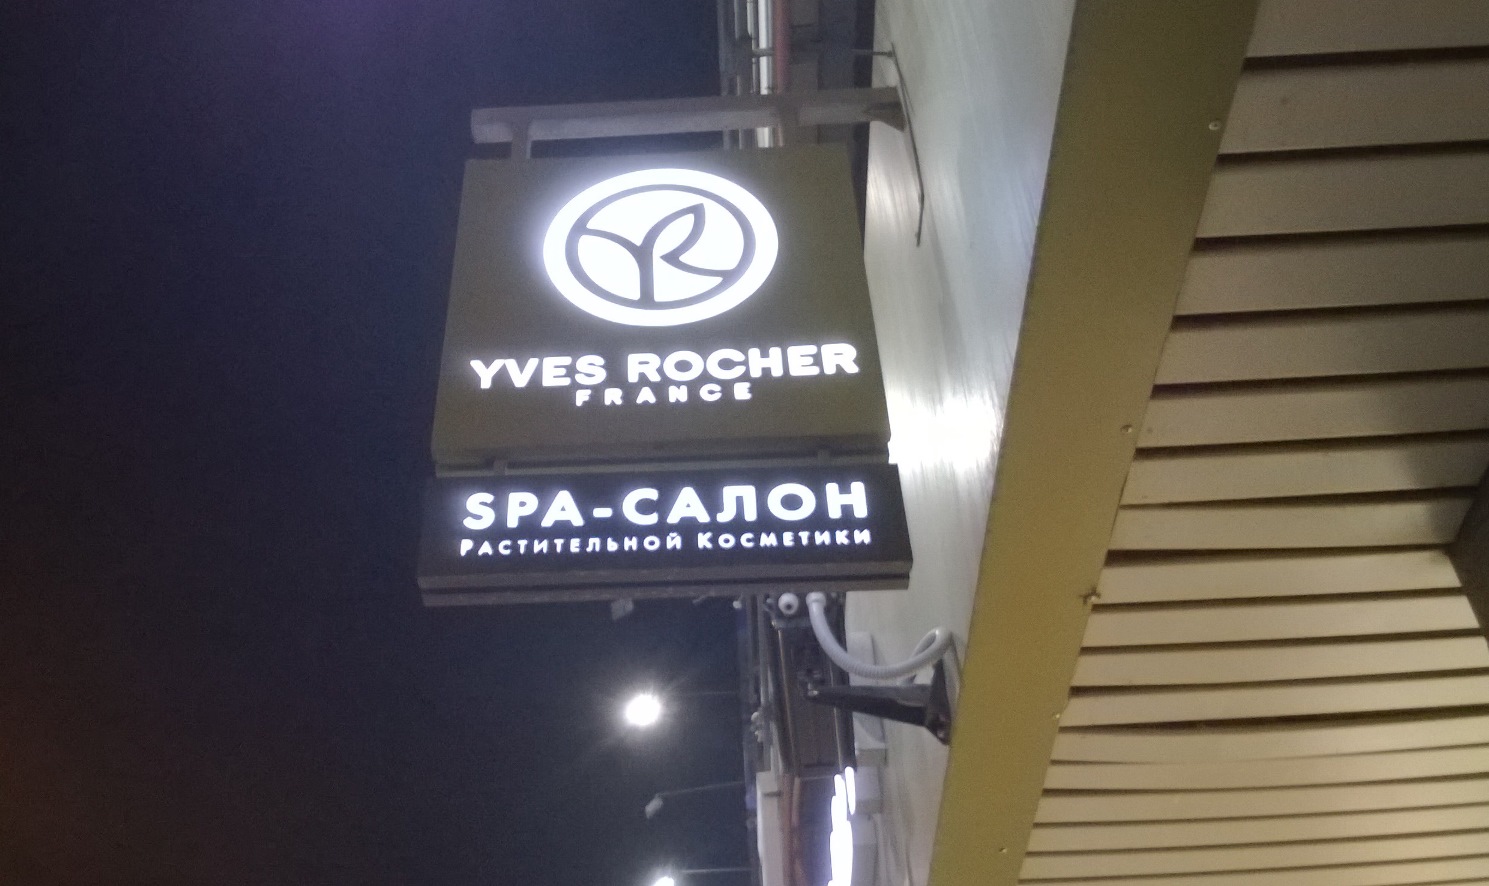 Enseigne "Yves Rocher" à Novossibirsk en Russie. К.Артём.1. Wikimédia.